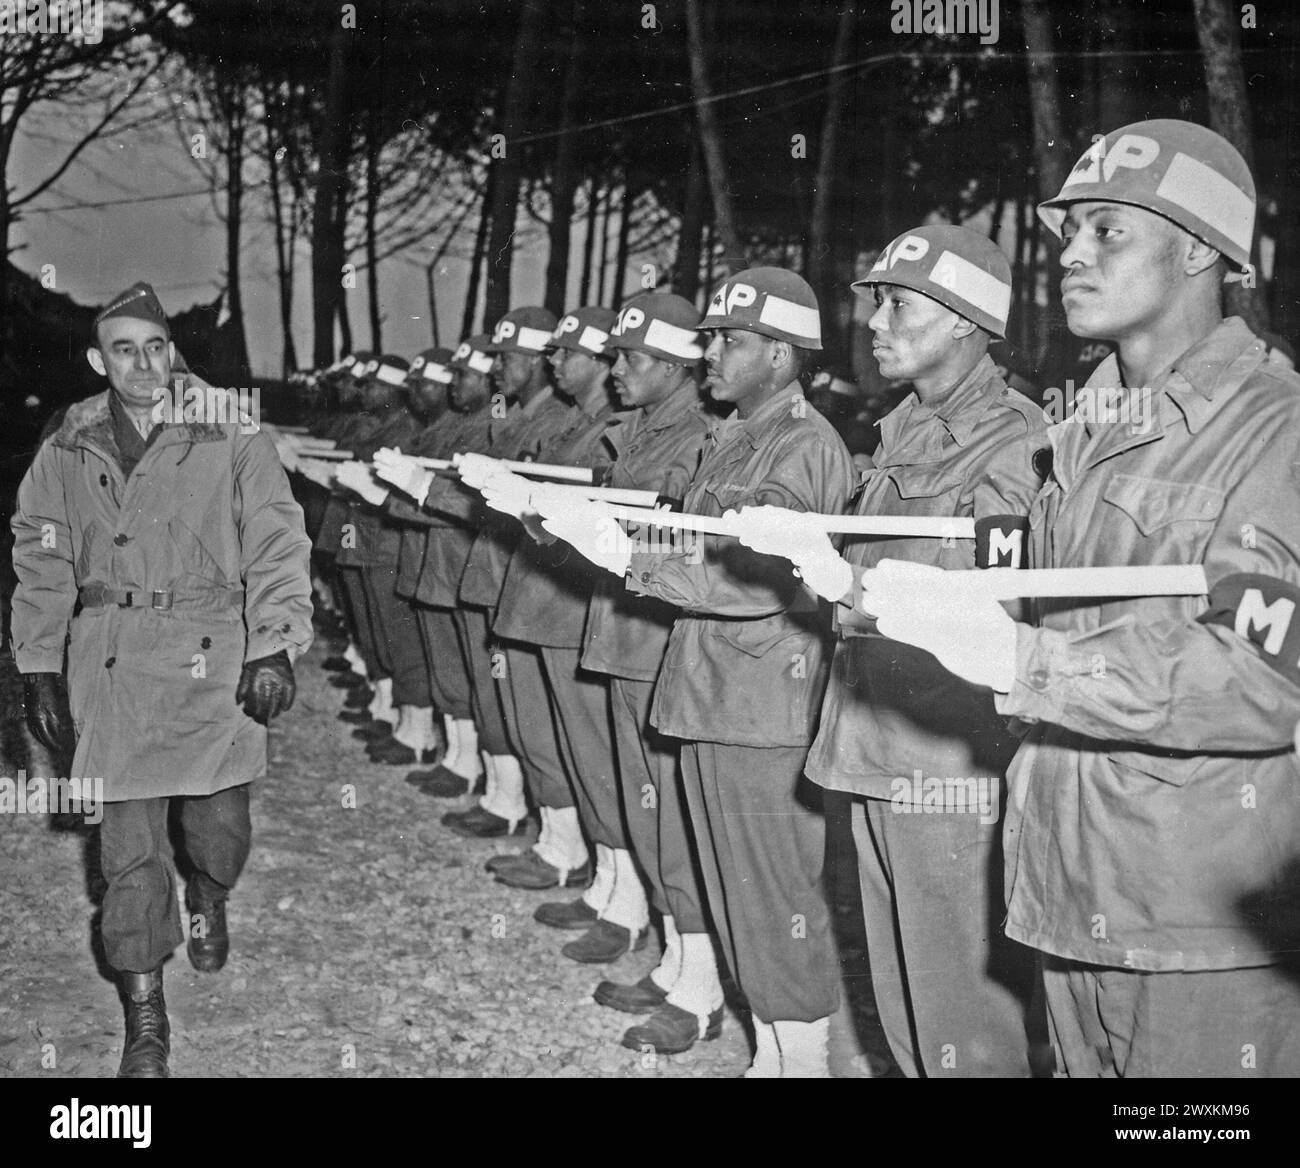 Le lieutenant général Joseph T. McNarney, commandant suprême adjoint des forces alliées, théâtre méditerranéen, inspecte la Garde d'honneur des députés lors de sa tournée du front de la Cinquième Armée dans le secteur de la 92e Division CA. Avril 1945 Banque D'Images